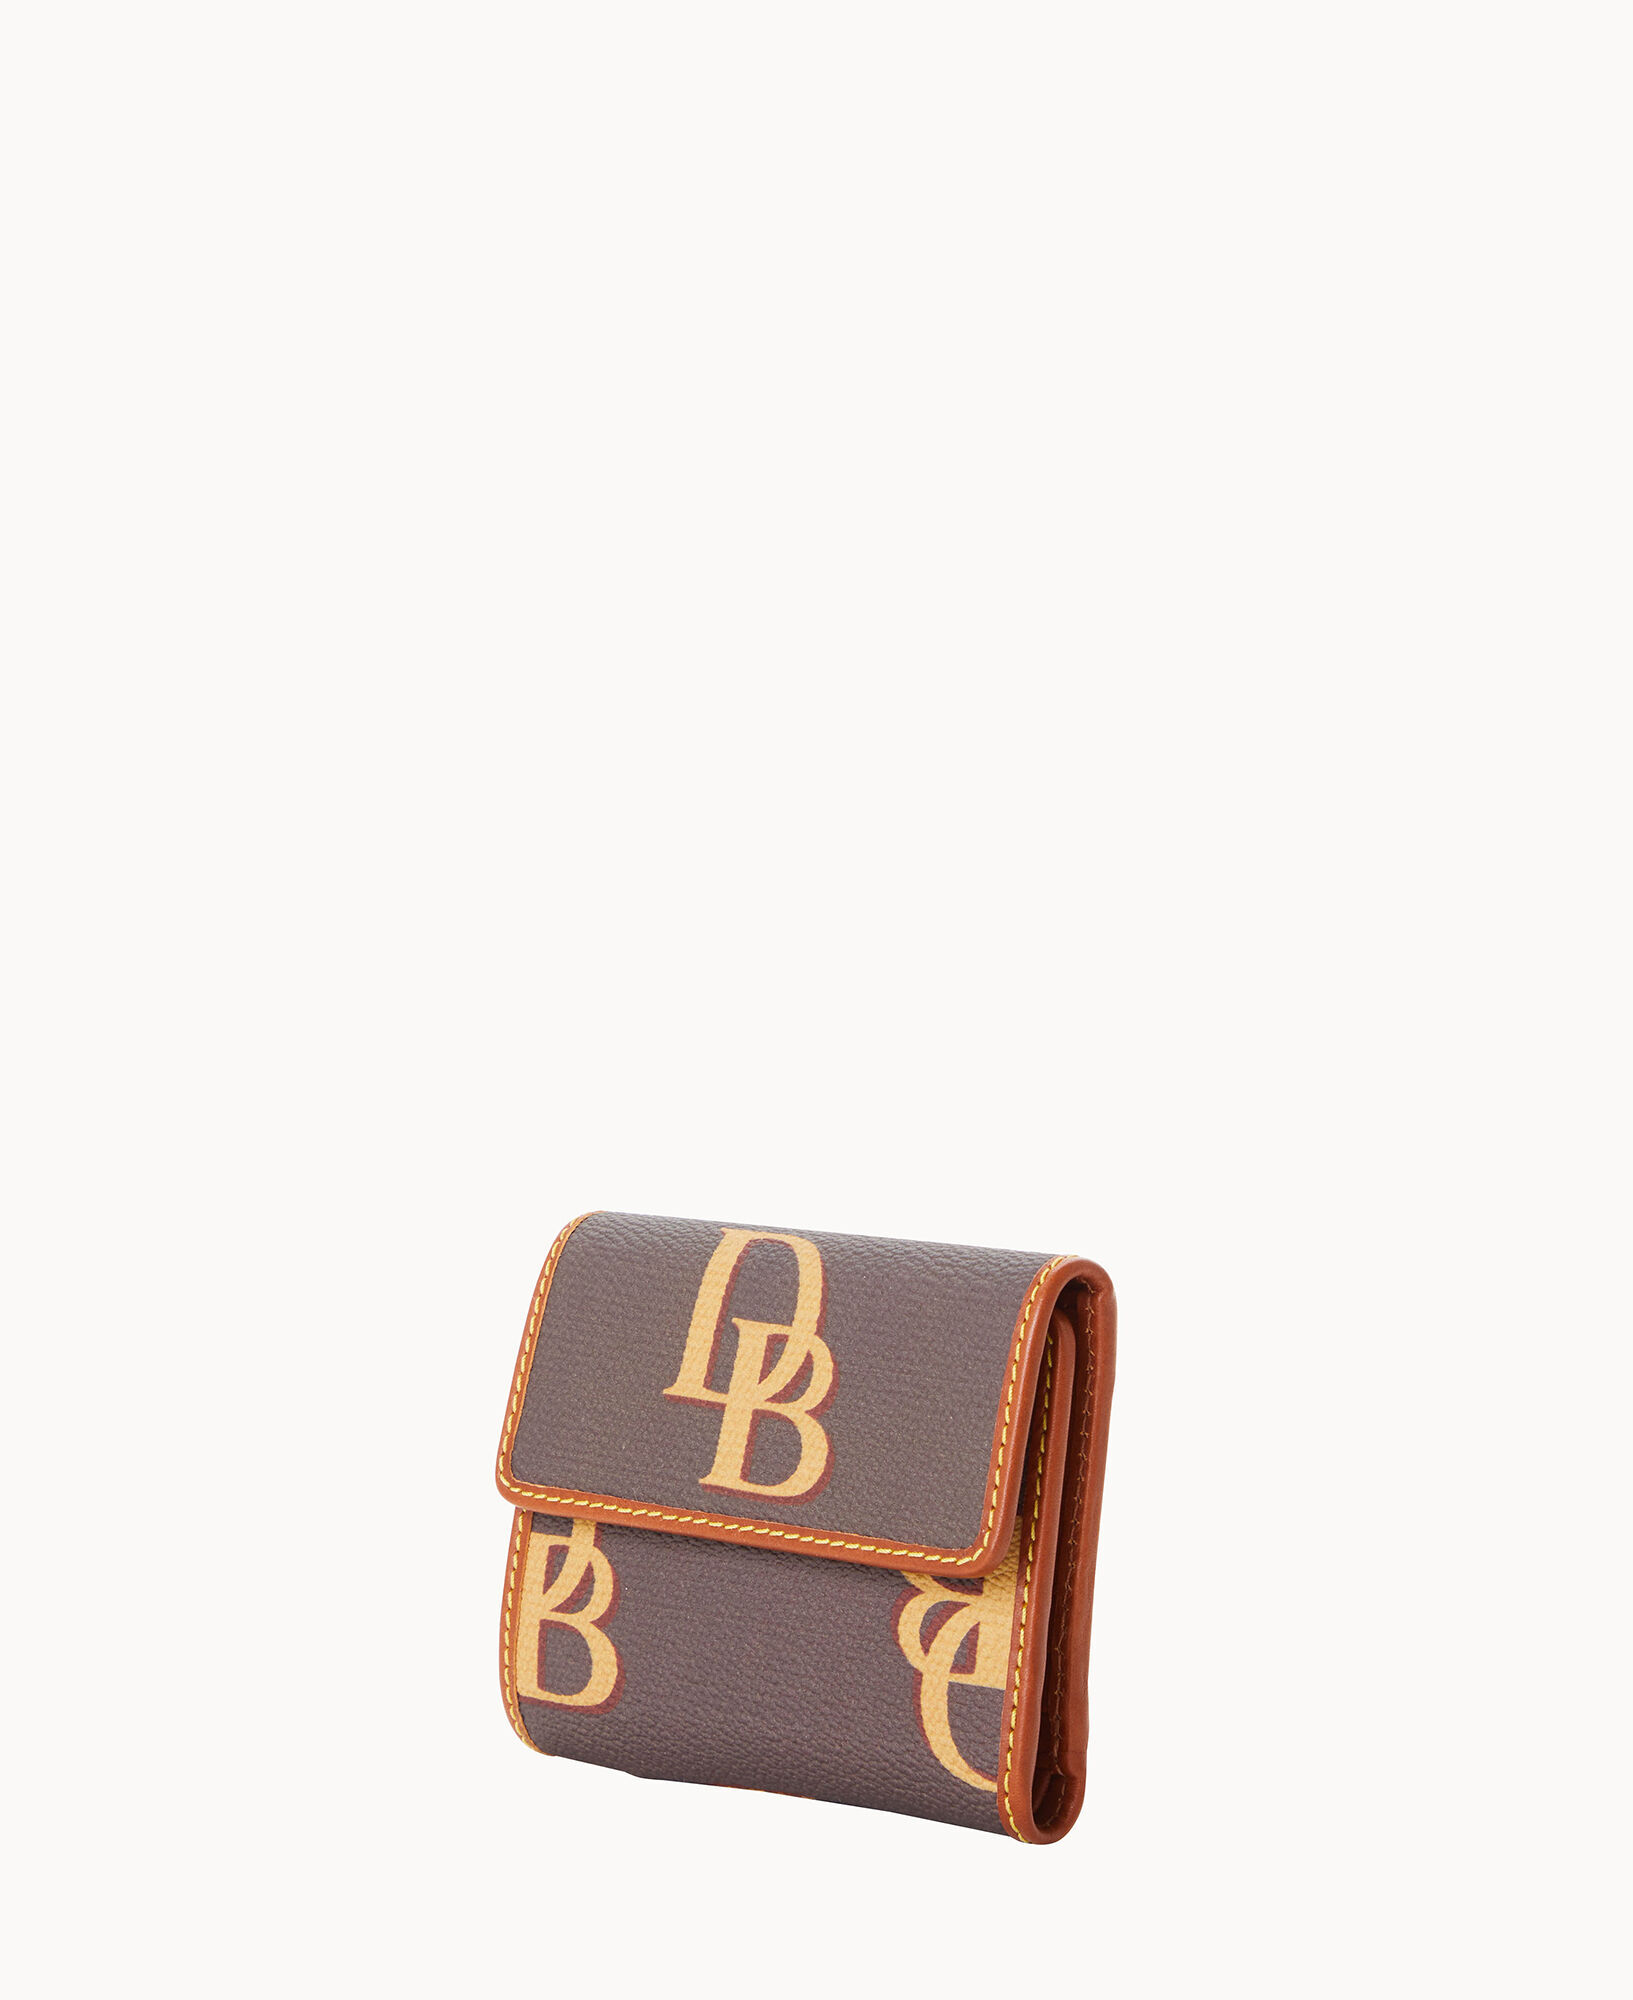 Dooney & Bourke Monogram Small Flap Wallet